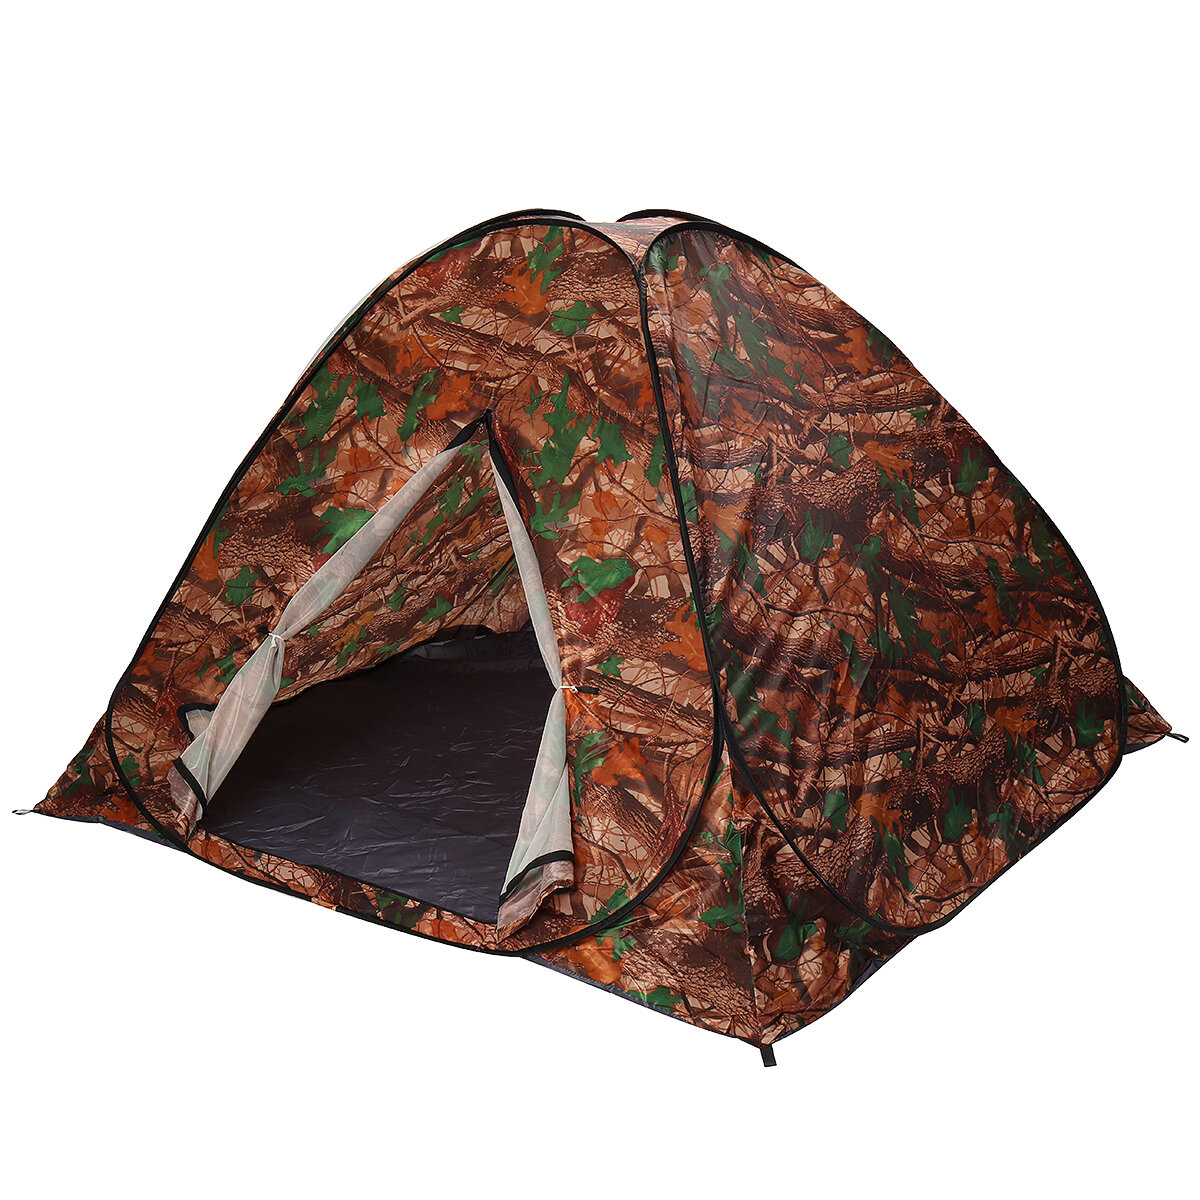 ürkçe: 3-4 Kişilik Otomatik Kamp Çadırı Anında Hızlı Açılış Anti UV Gümüş Kaplama Çadır Açık Hava Yaprak Kamuflajlı Tente